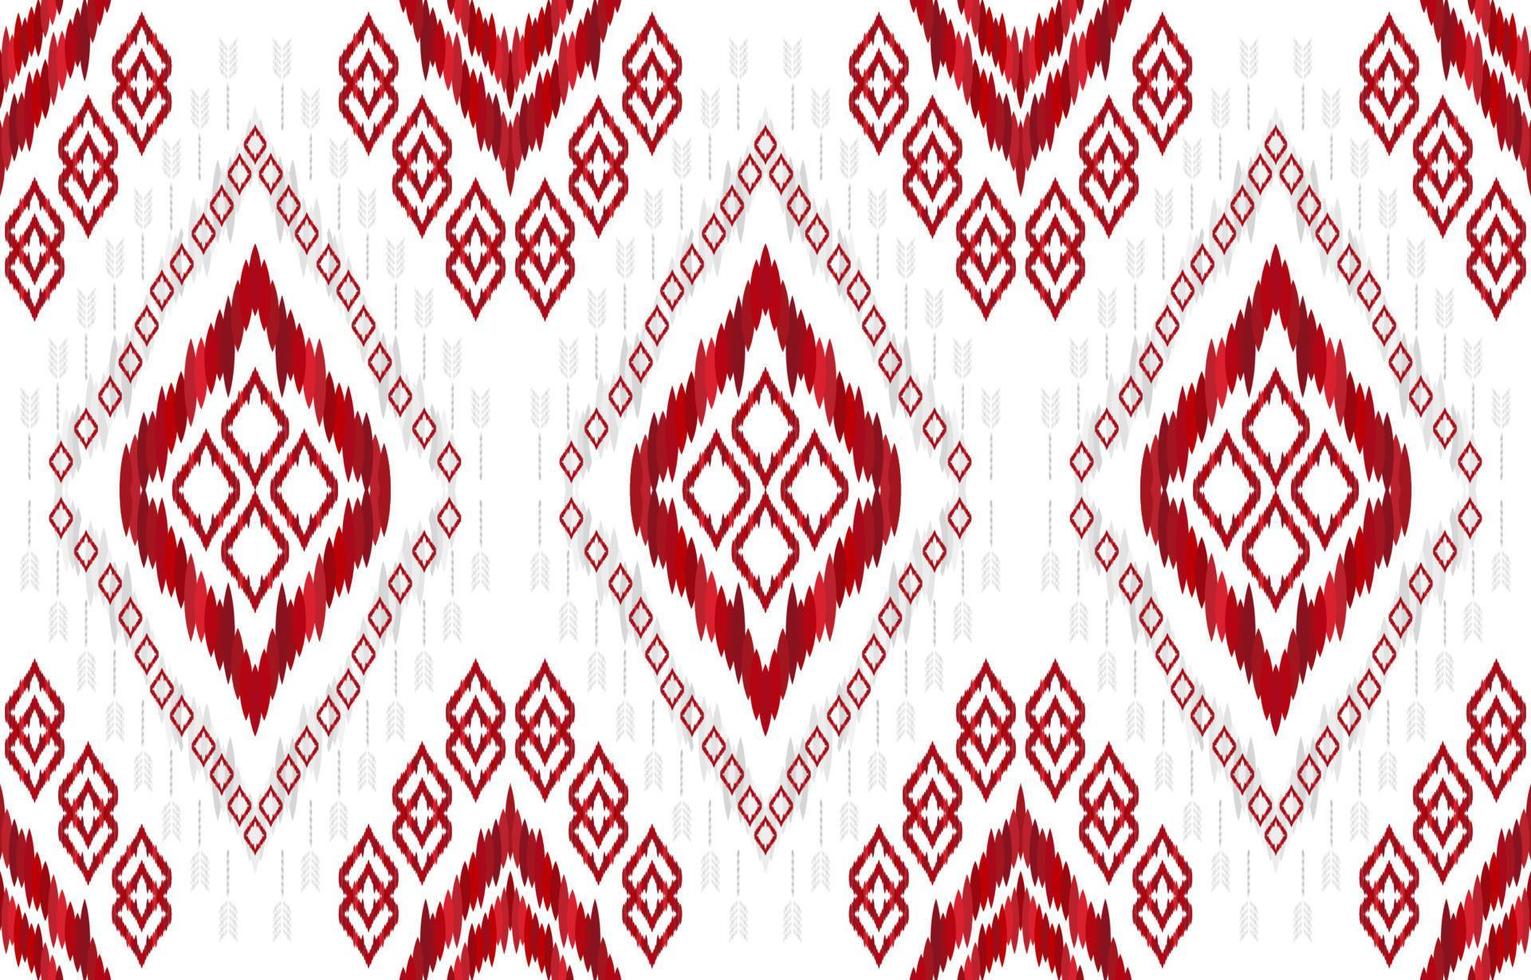 patrones ikat rojos y plateados. estilo retro vintage tribal geométrico. tela étnica ikat de patrones sin fisuras. vector de impresión ikat azteca navajo indio. diseño para telón de fondo textura tela ropa textil.